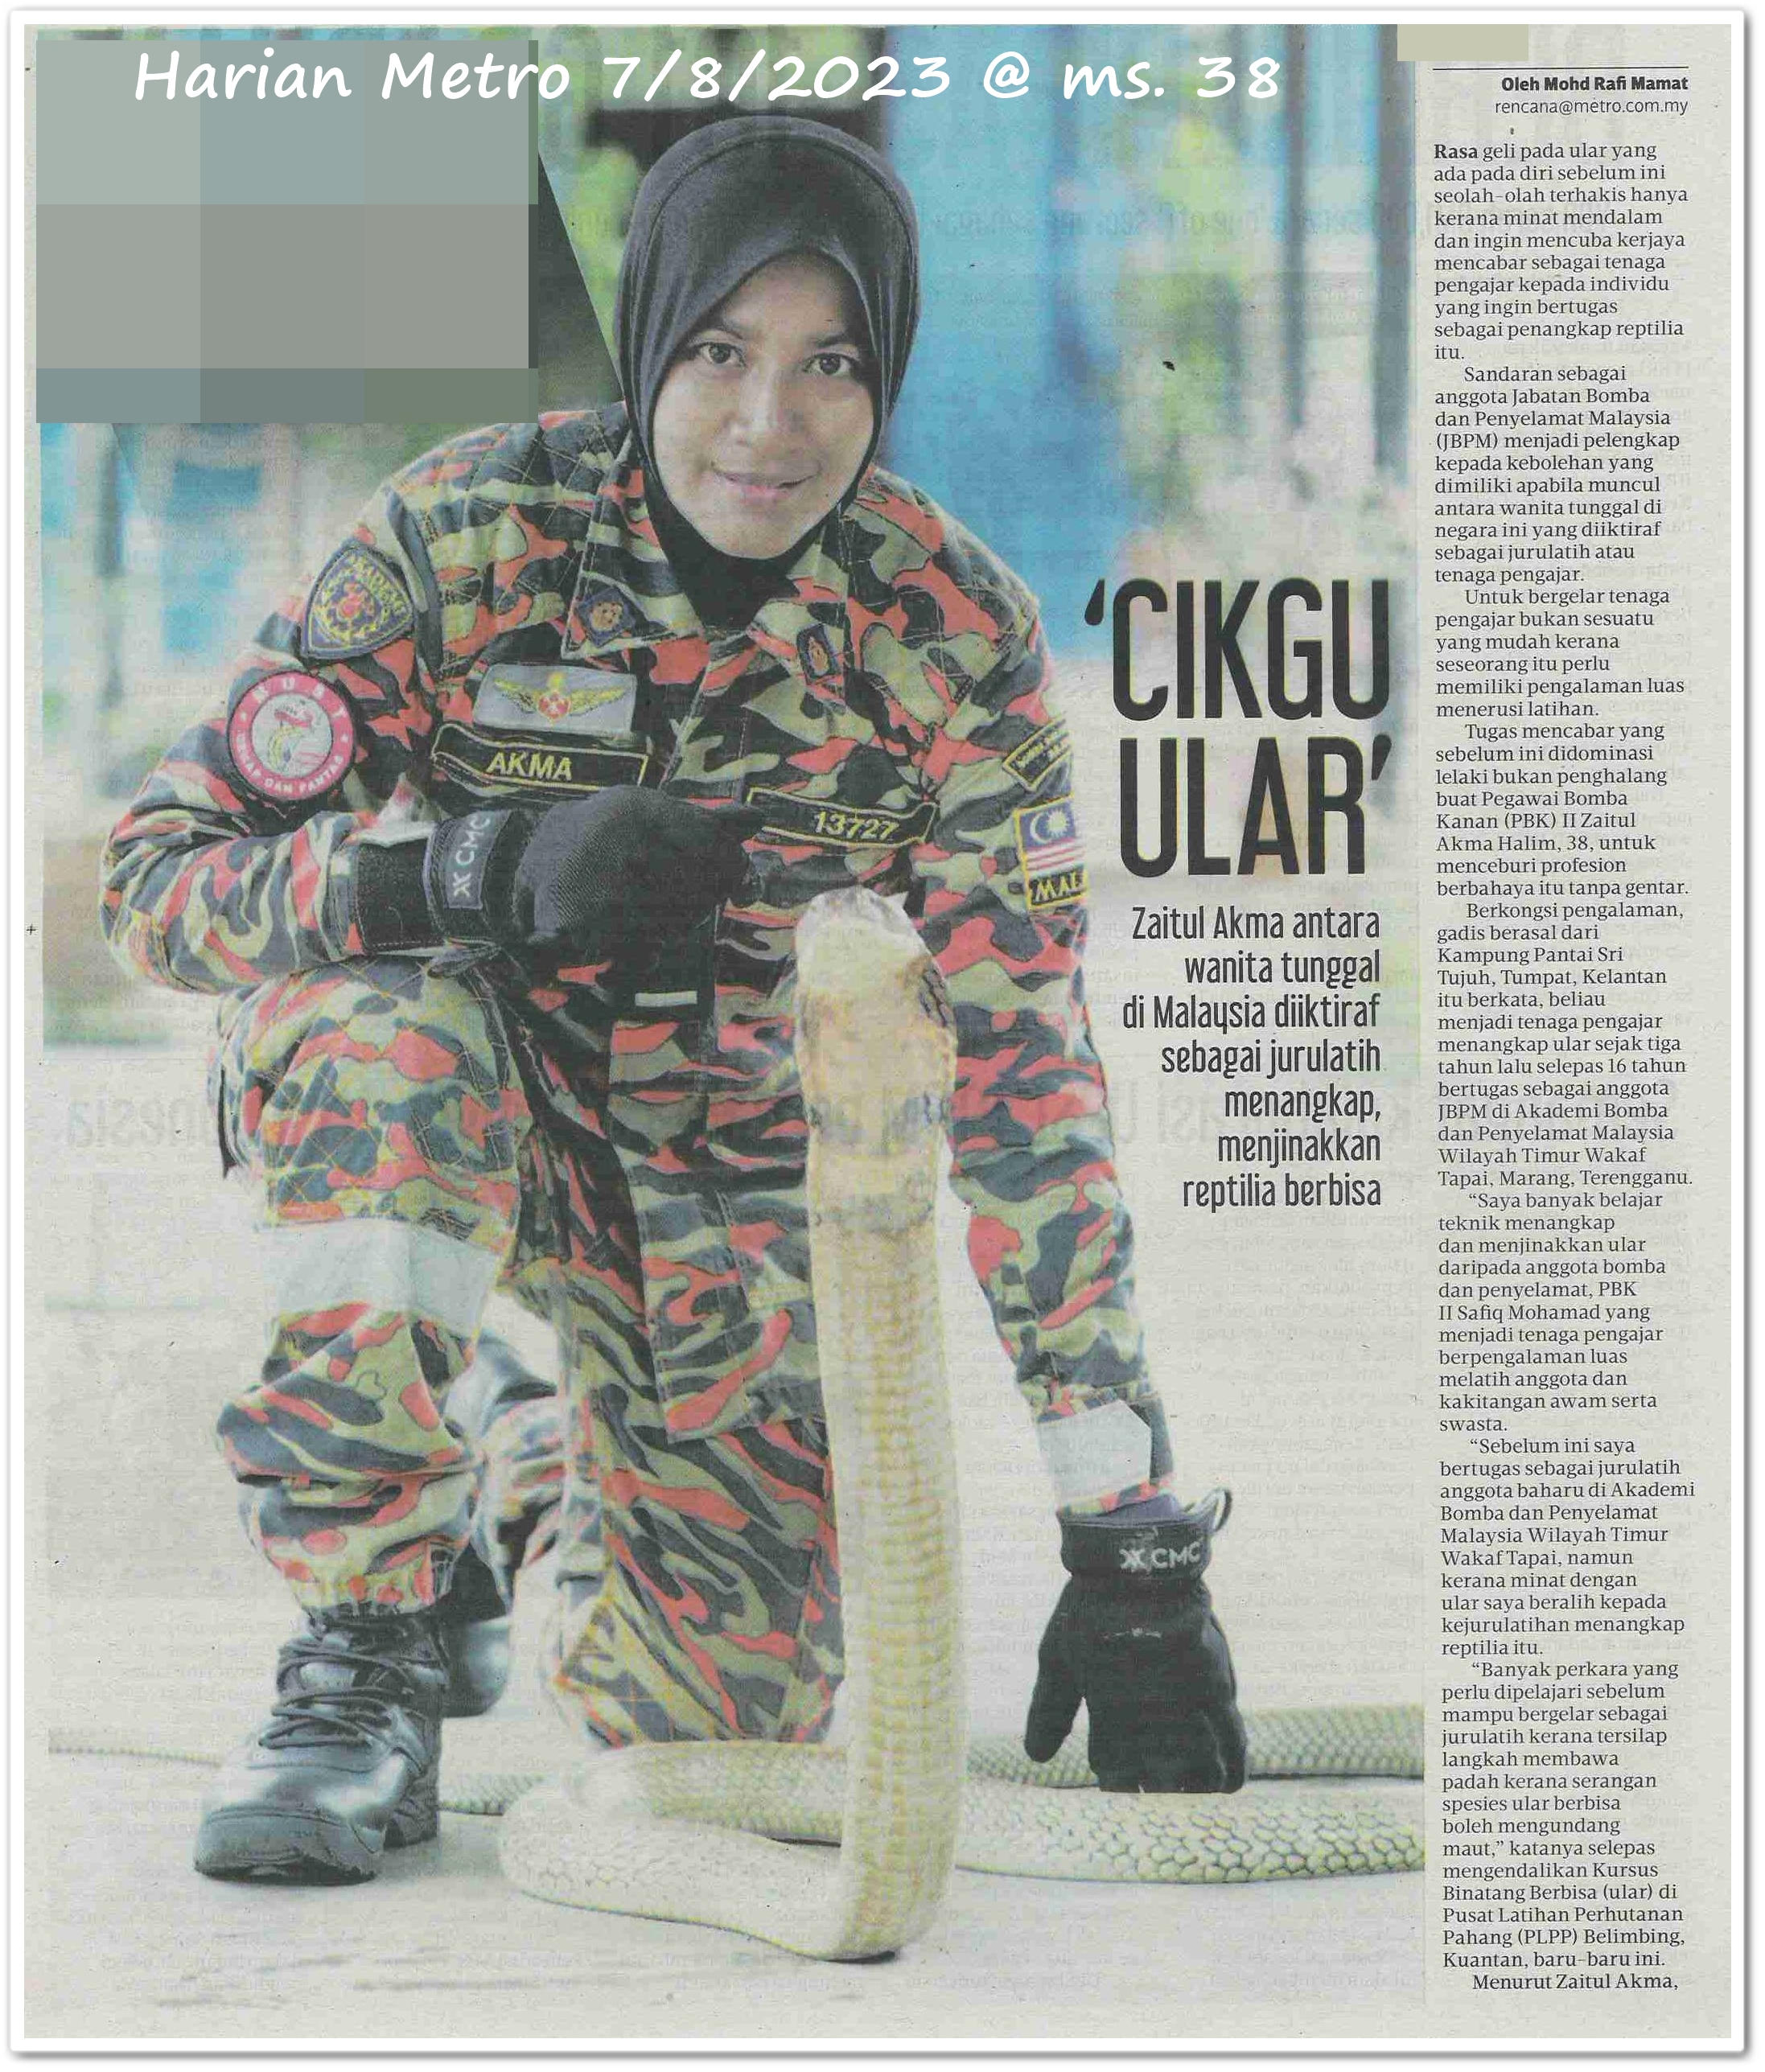 'Cikgu ular' ; Zaitul Akma antara wanita tunggal di Malaysia diiktiraf sebagai jurulatih menangkap, menjinakkan reptilia berbisa - Keratan akhbar Harian Metro 7 Ogos 2023